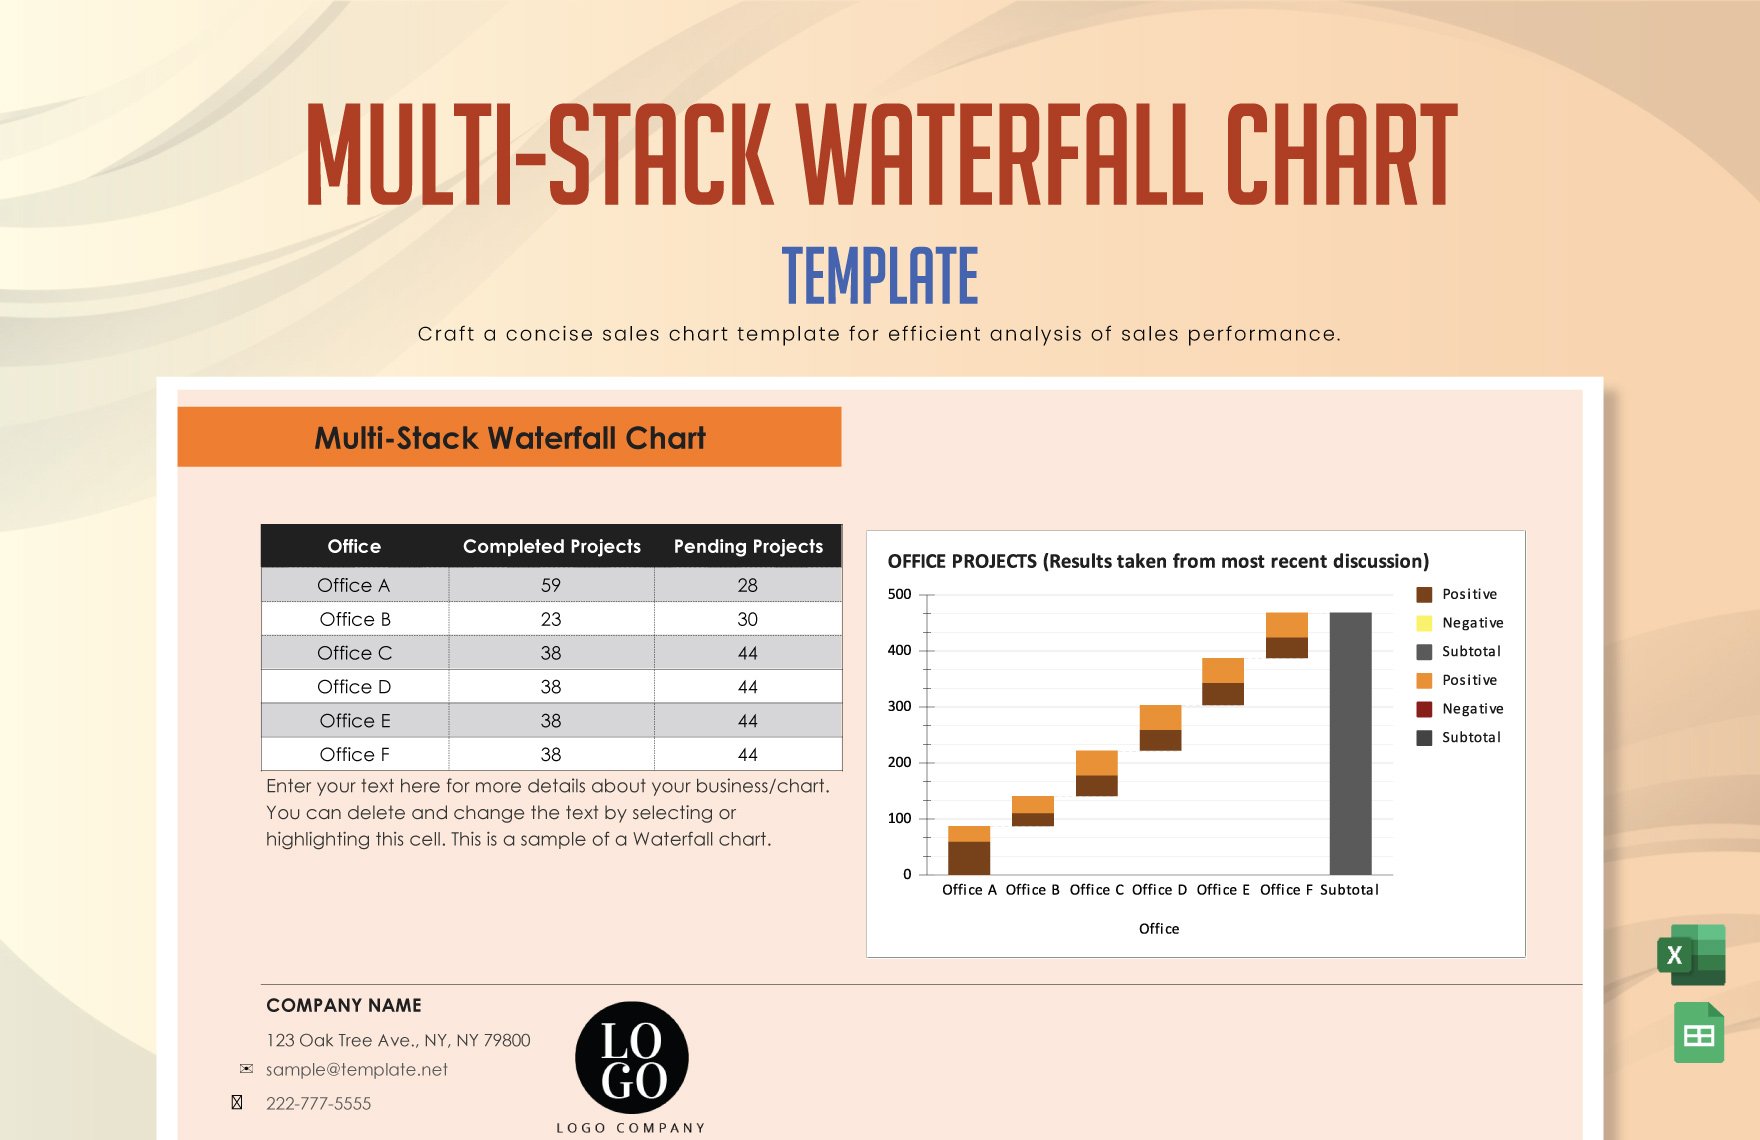 Free Multi-Stack Waterfall Chart